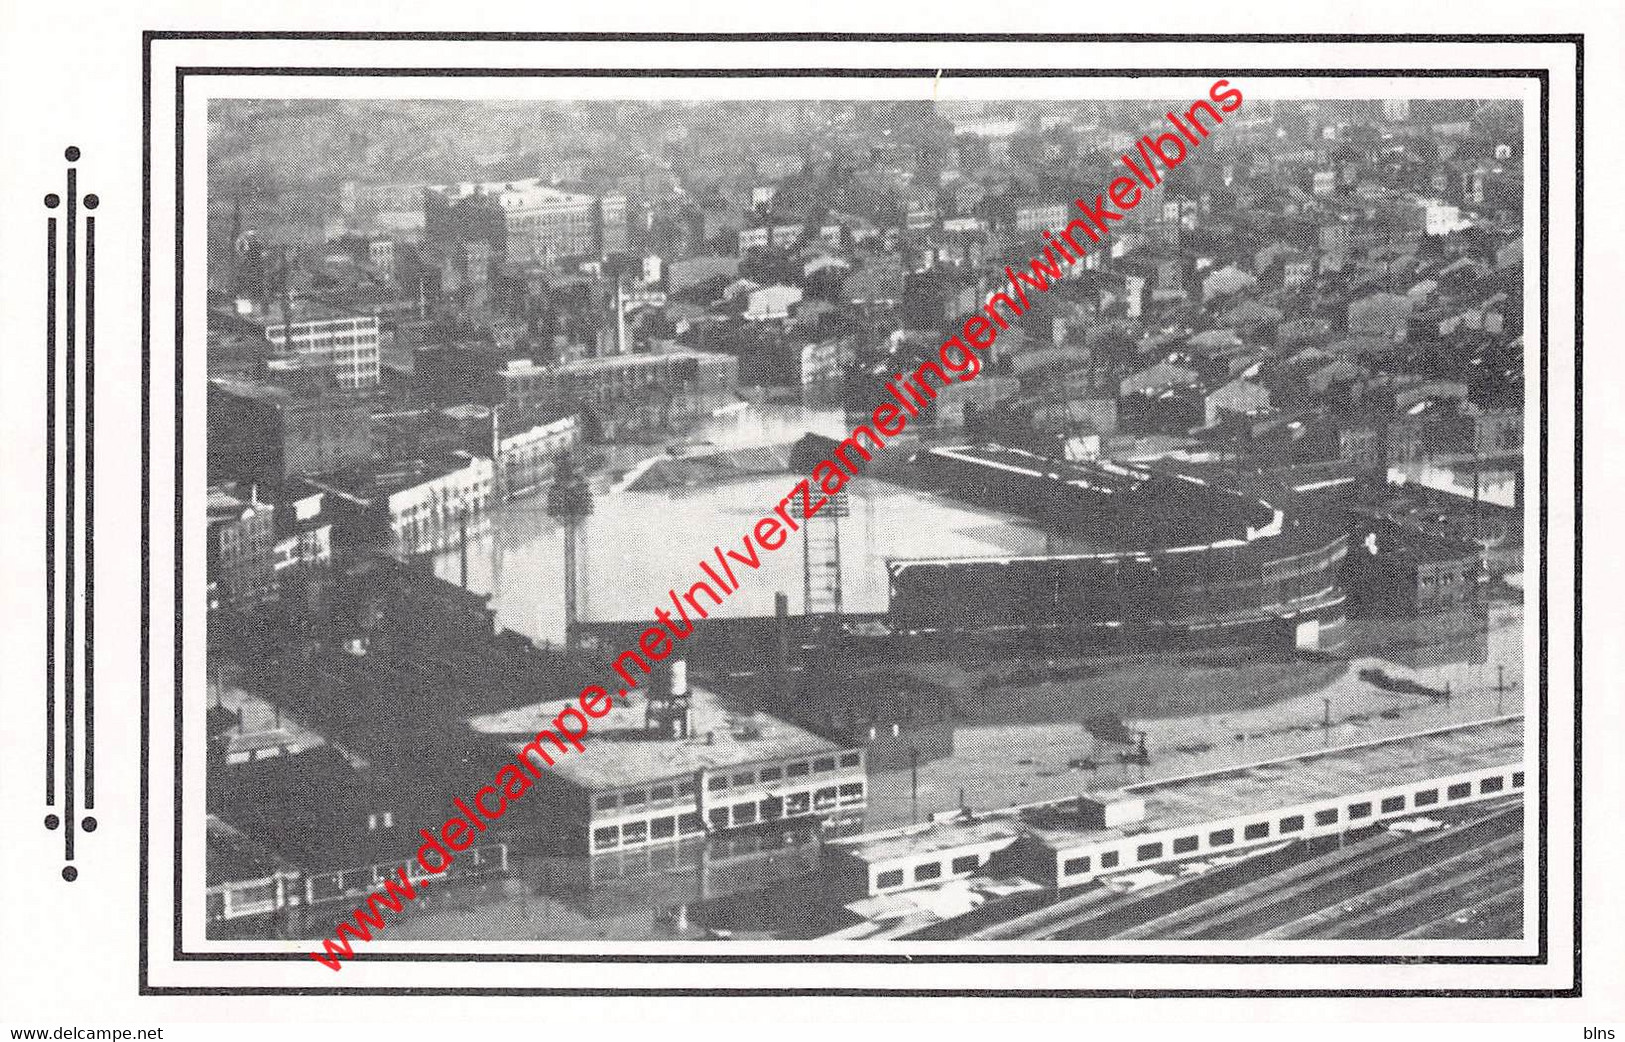 Cincinnati - Crosley Field - 1937 Overflowing Of Ohio River - Baseball - Ohio United States - Cincinnati